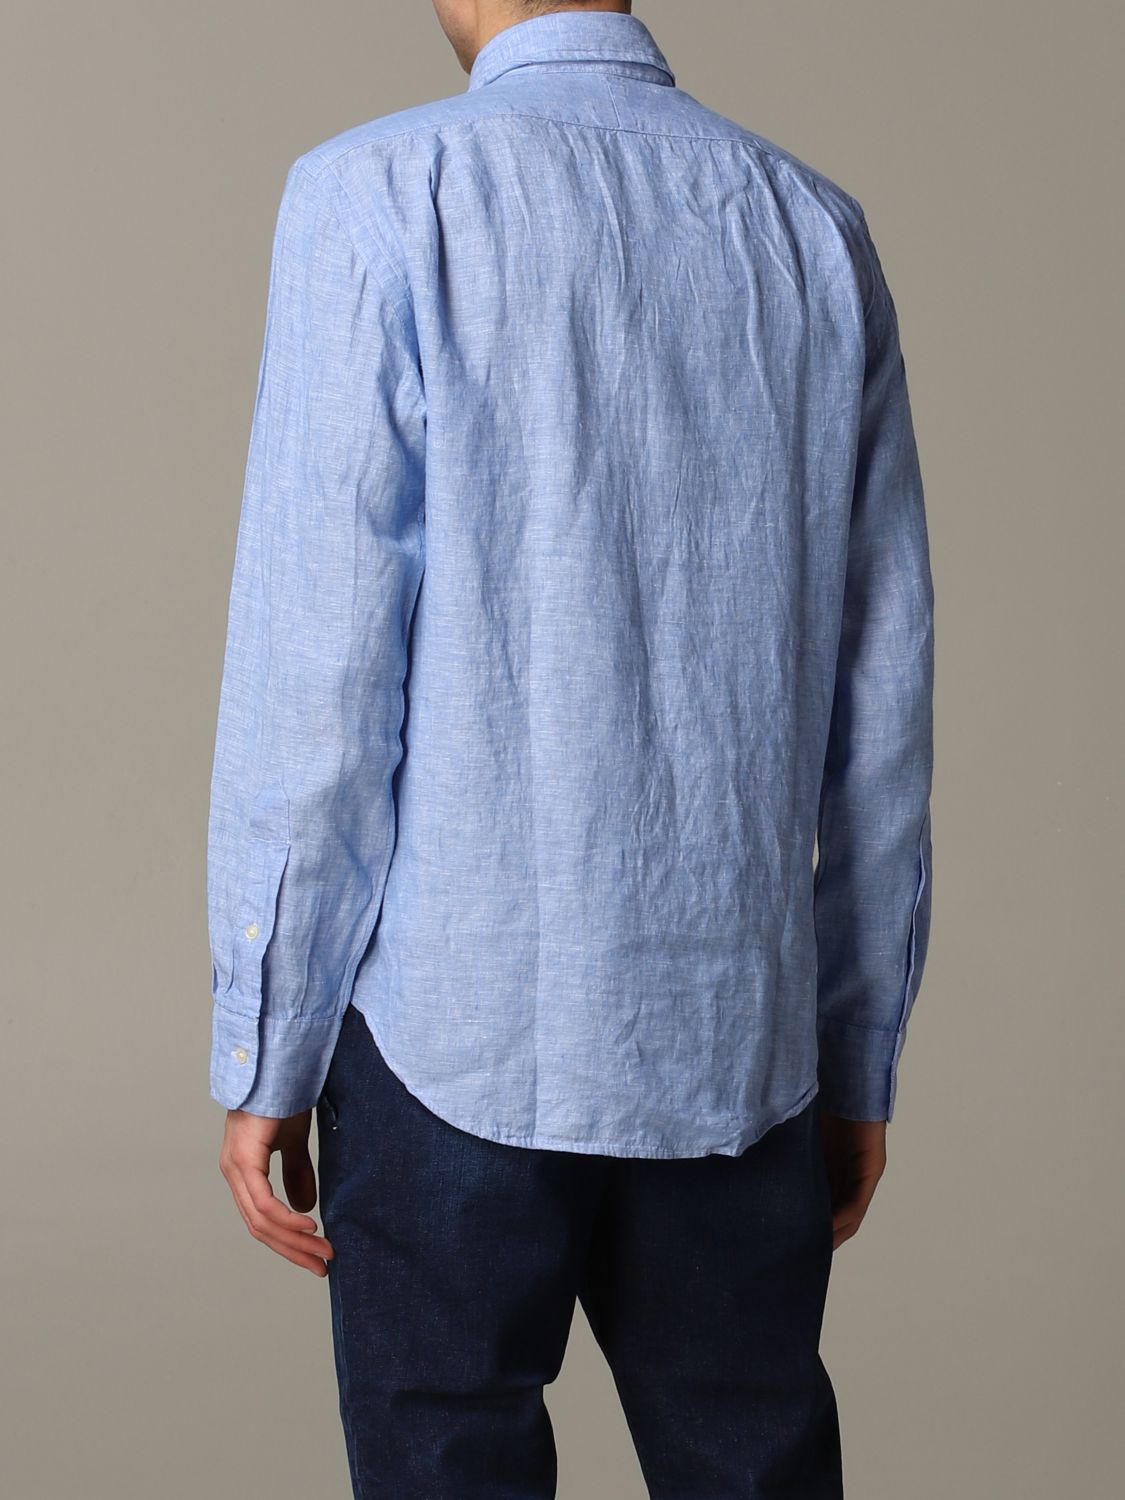 Camisa Polo Ralph Lauren: Camisa Polo Ralph Lauren para hombre azul claro 3